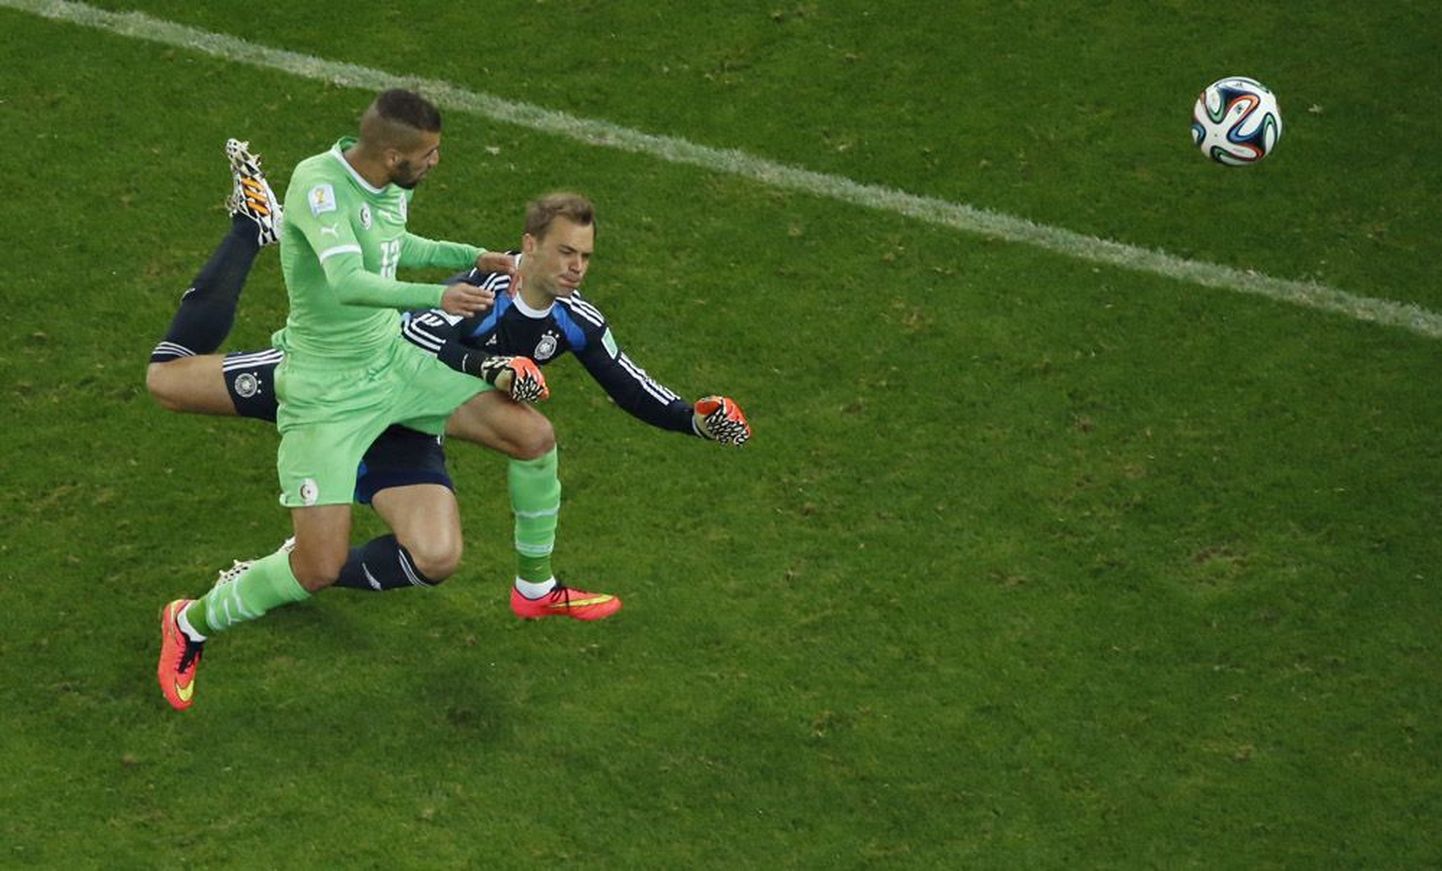 Saksamaa koondise väravavaht Manuel Neuer (paremal) on edestanud Alžeeria koondise ründajat Islam Slimanit ja löönud peaga palli alžeerlase eest ära.